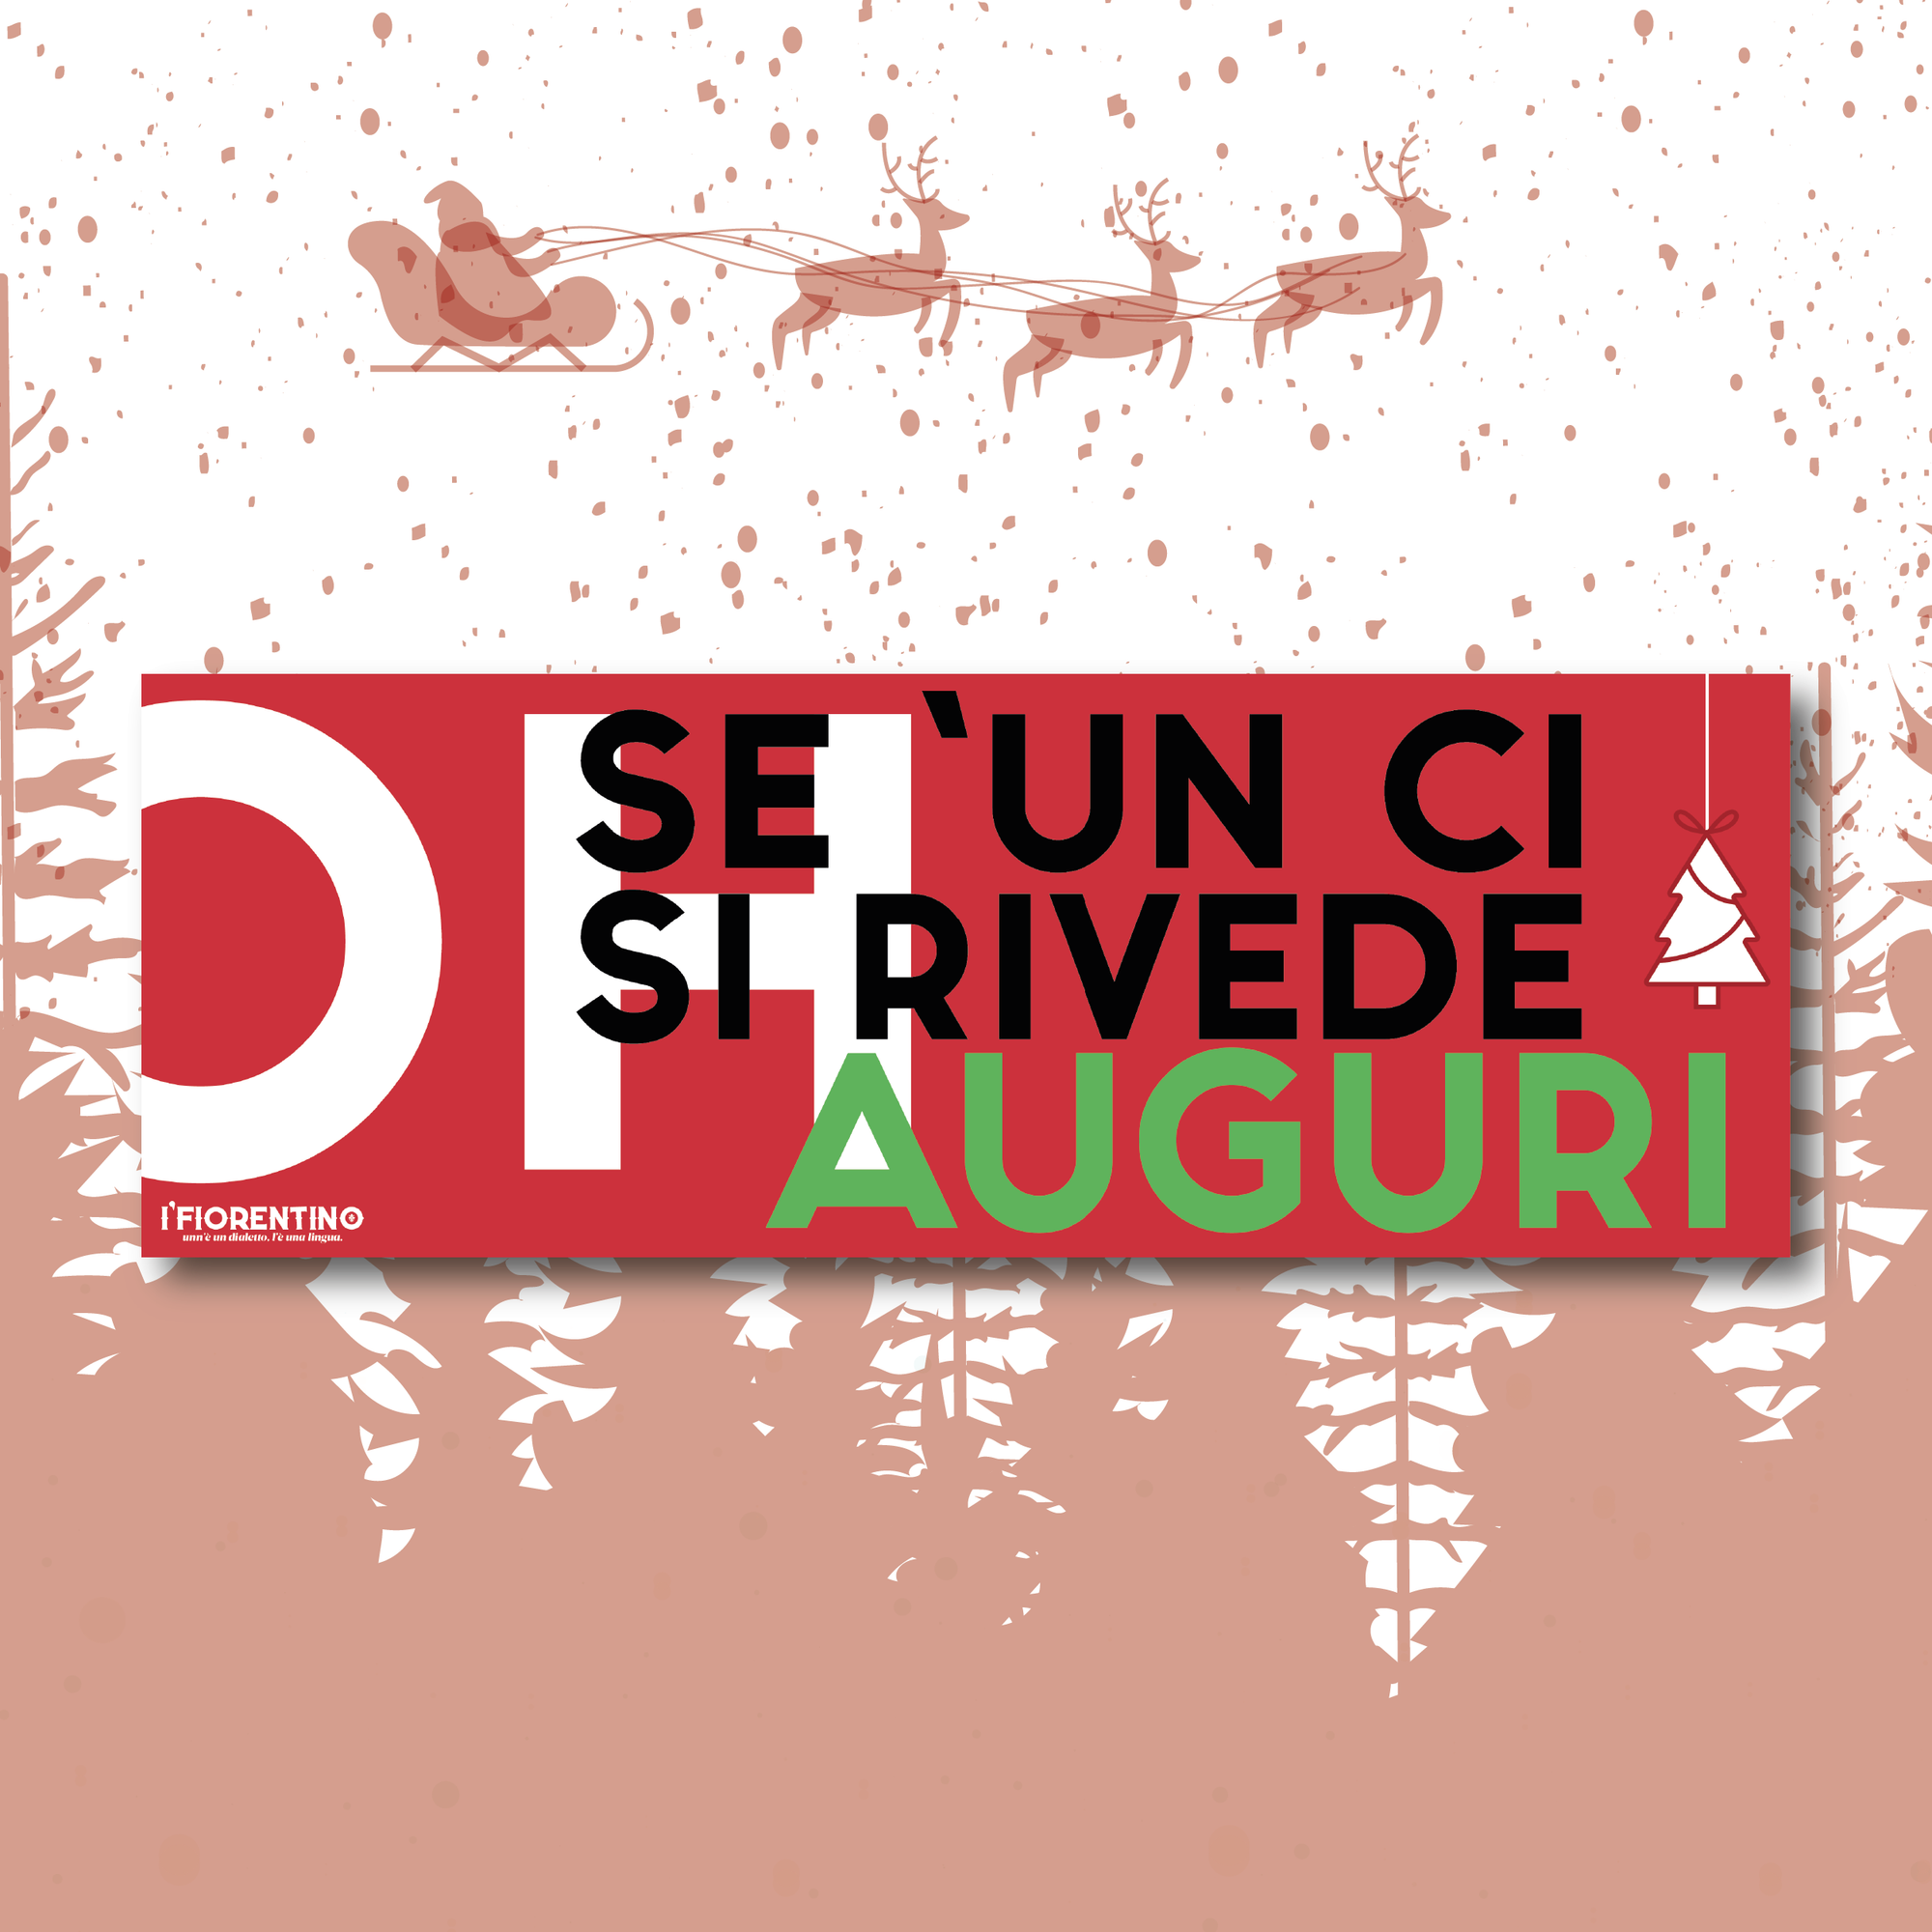 BIGLIETTO DI AUGURI NATALIZIO "OH SE 'UN CI SI RIVEDE AUGURI!" - poster fiorentini - poster firenze - regalo fiorentino - fiorentino  - foppeddittelo